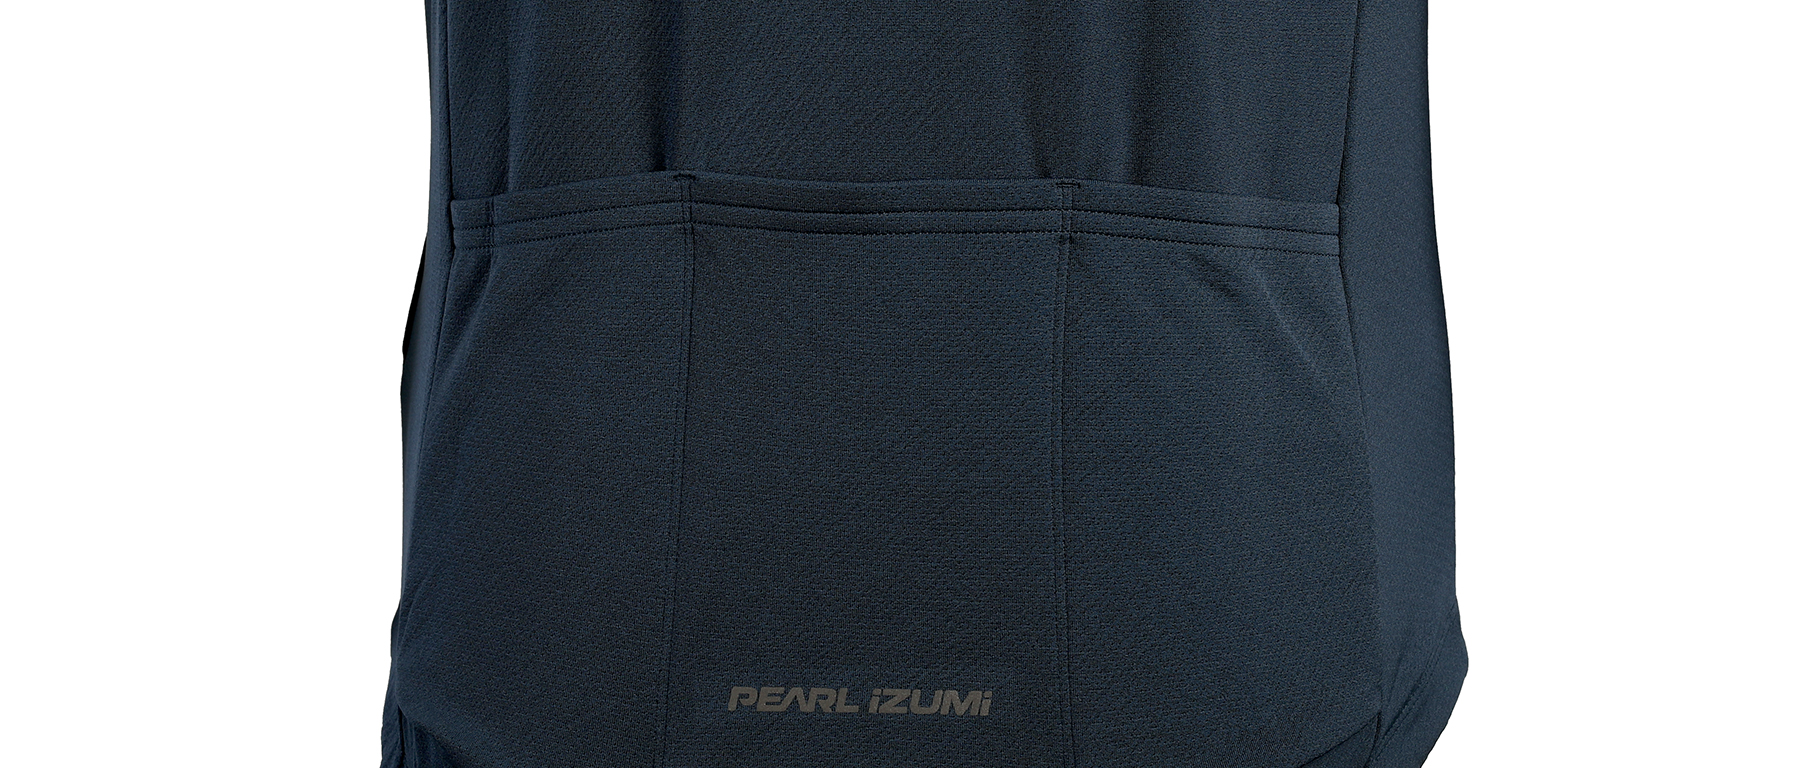 Pearl Izumi Quest Jersey